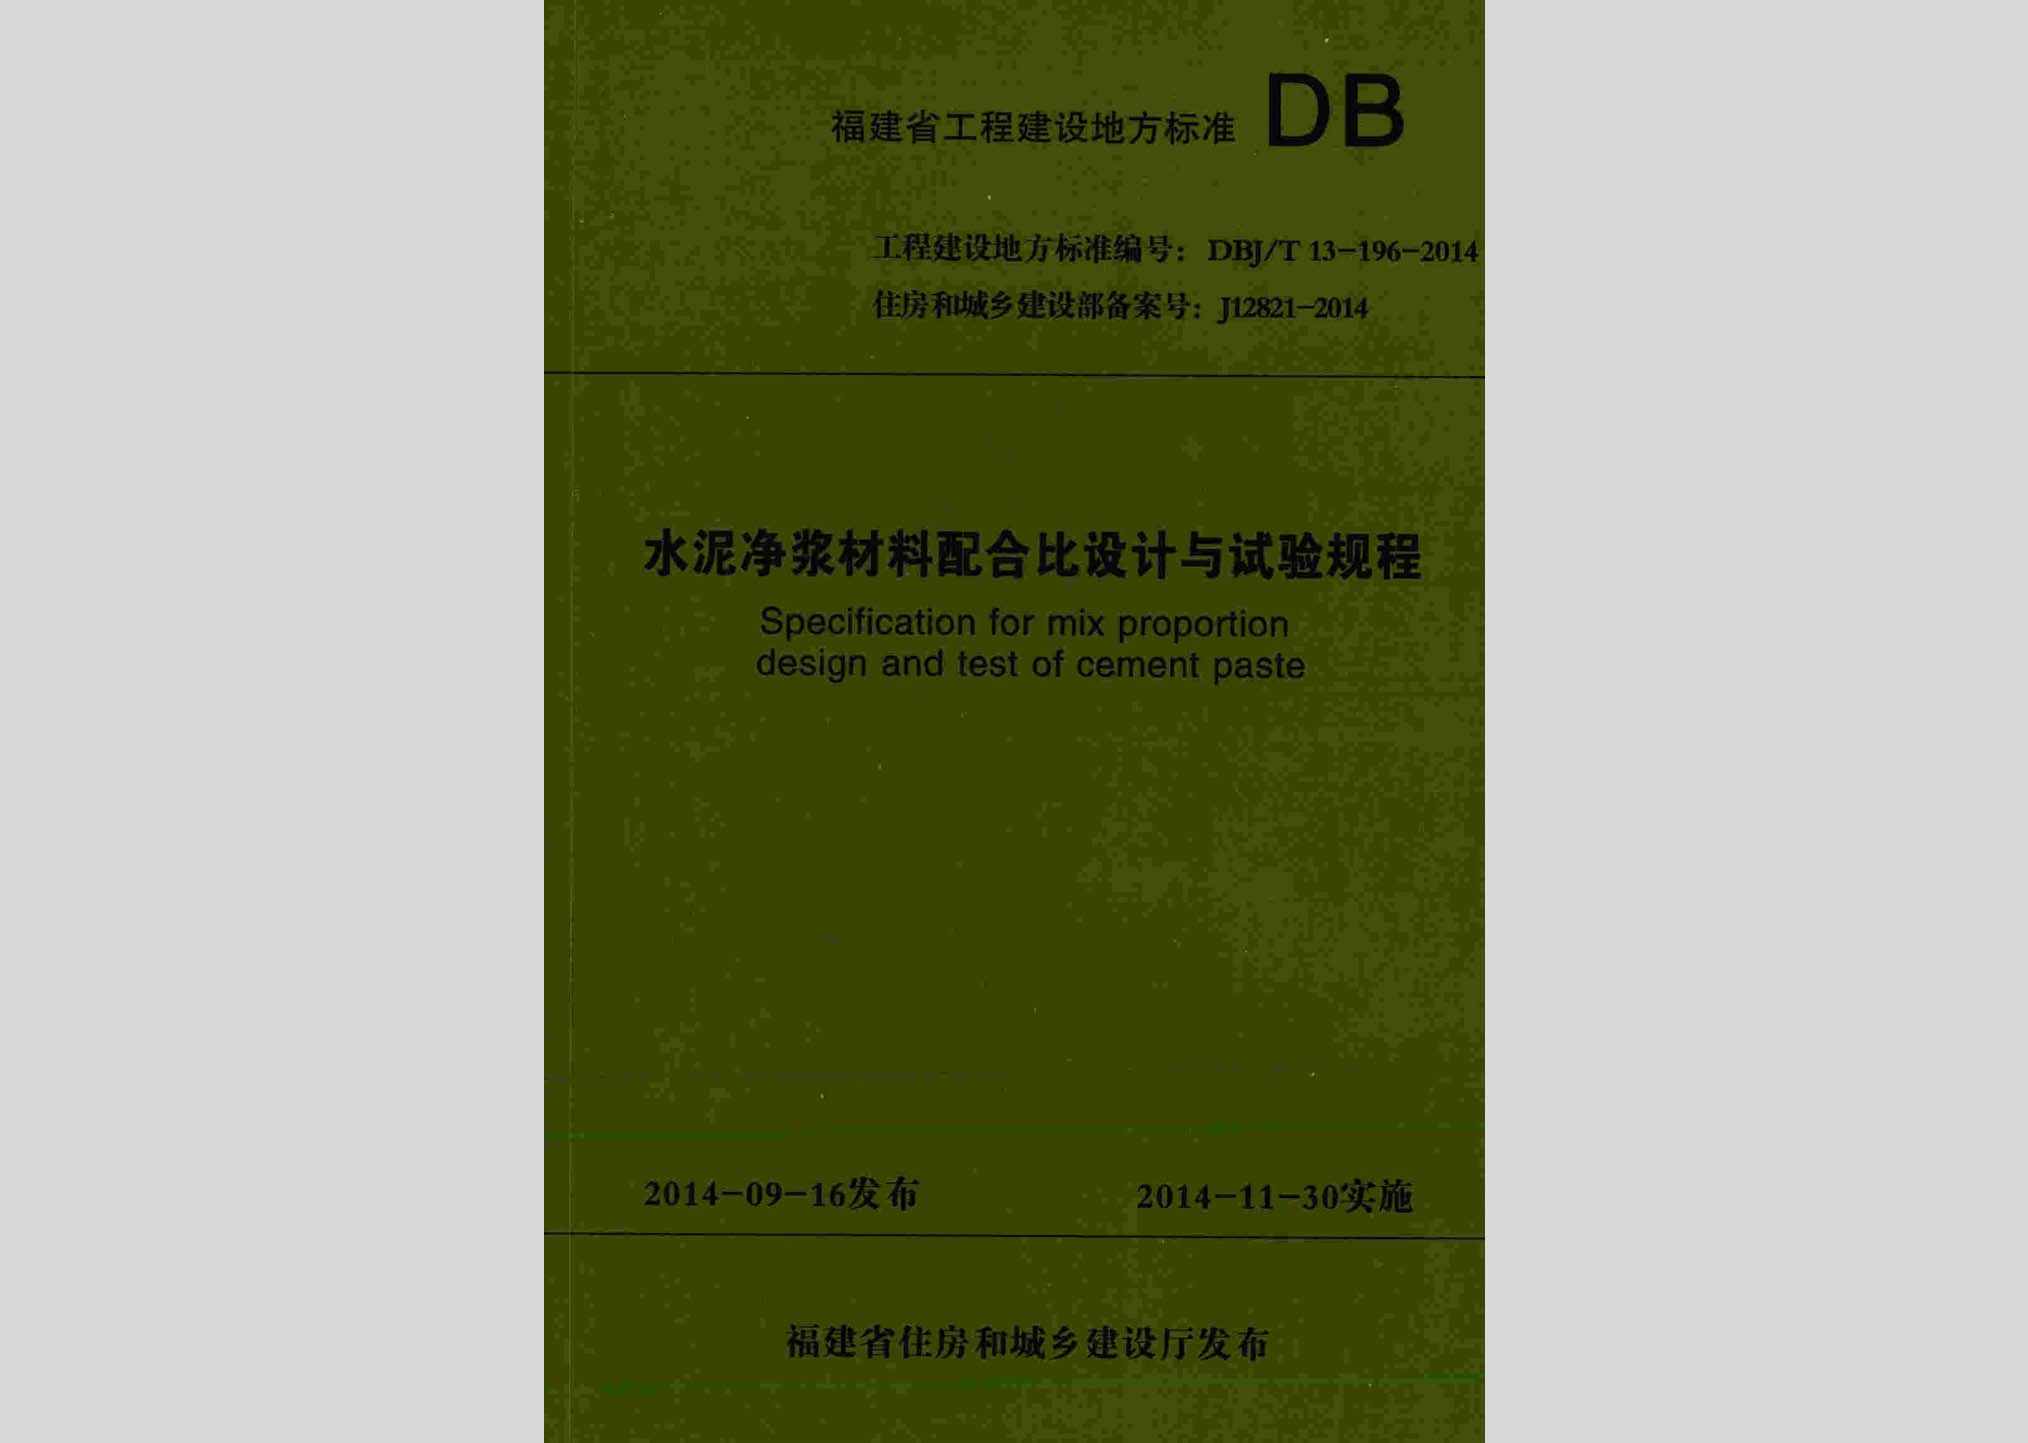 DBJ/T13-196-2014：水泥净浆材料配合比设计与试验规程